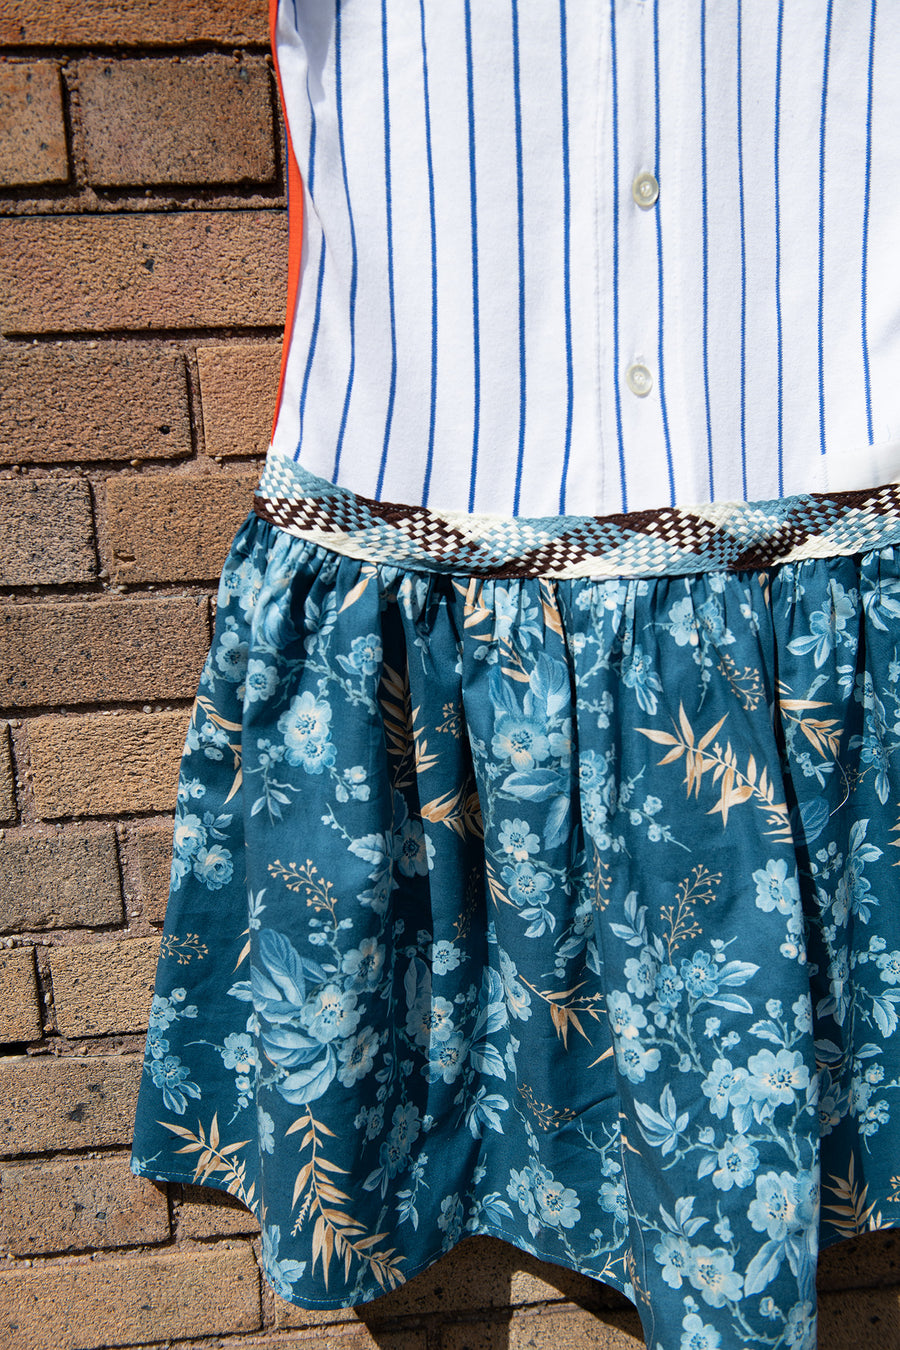 BATSHEVA - One-of-a-Kind Vintage Mets Jersey Dress